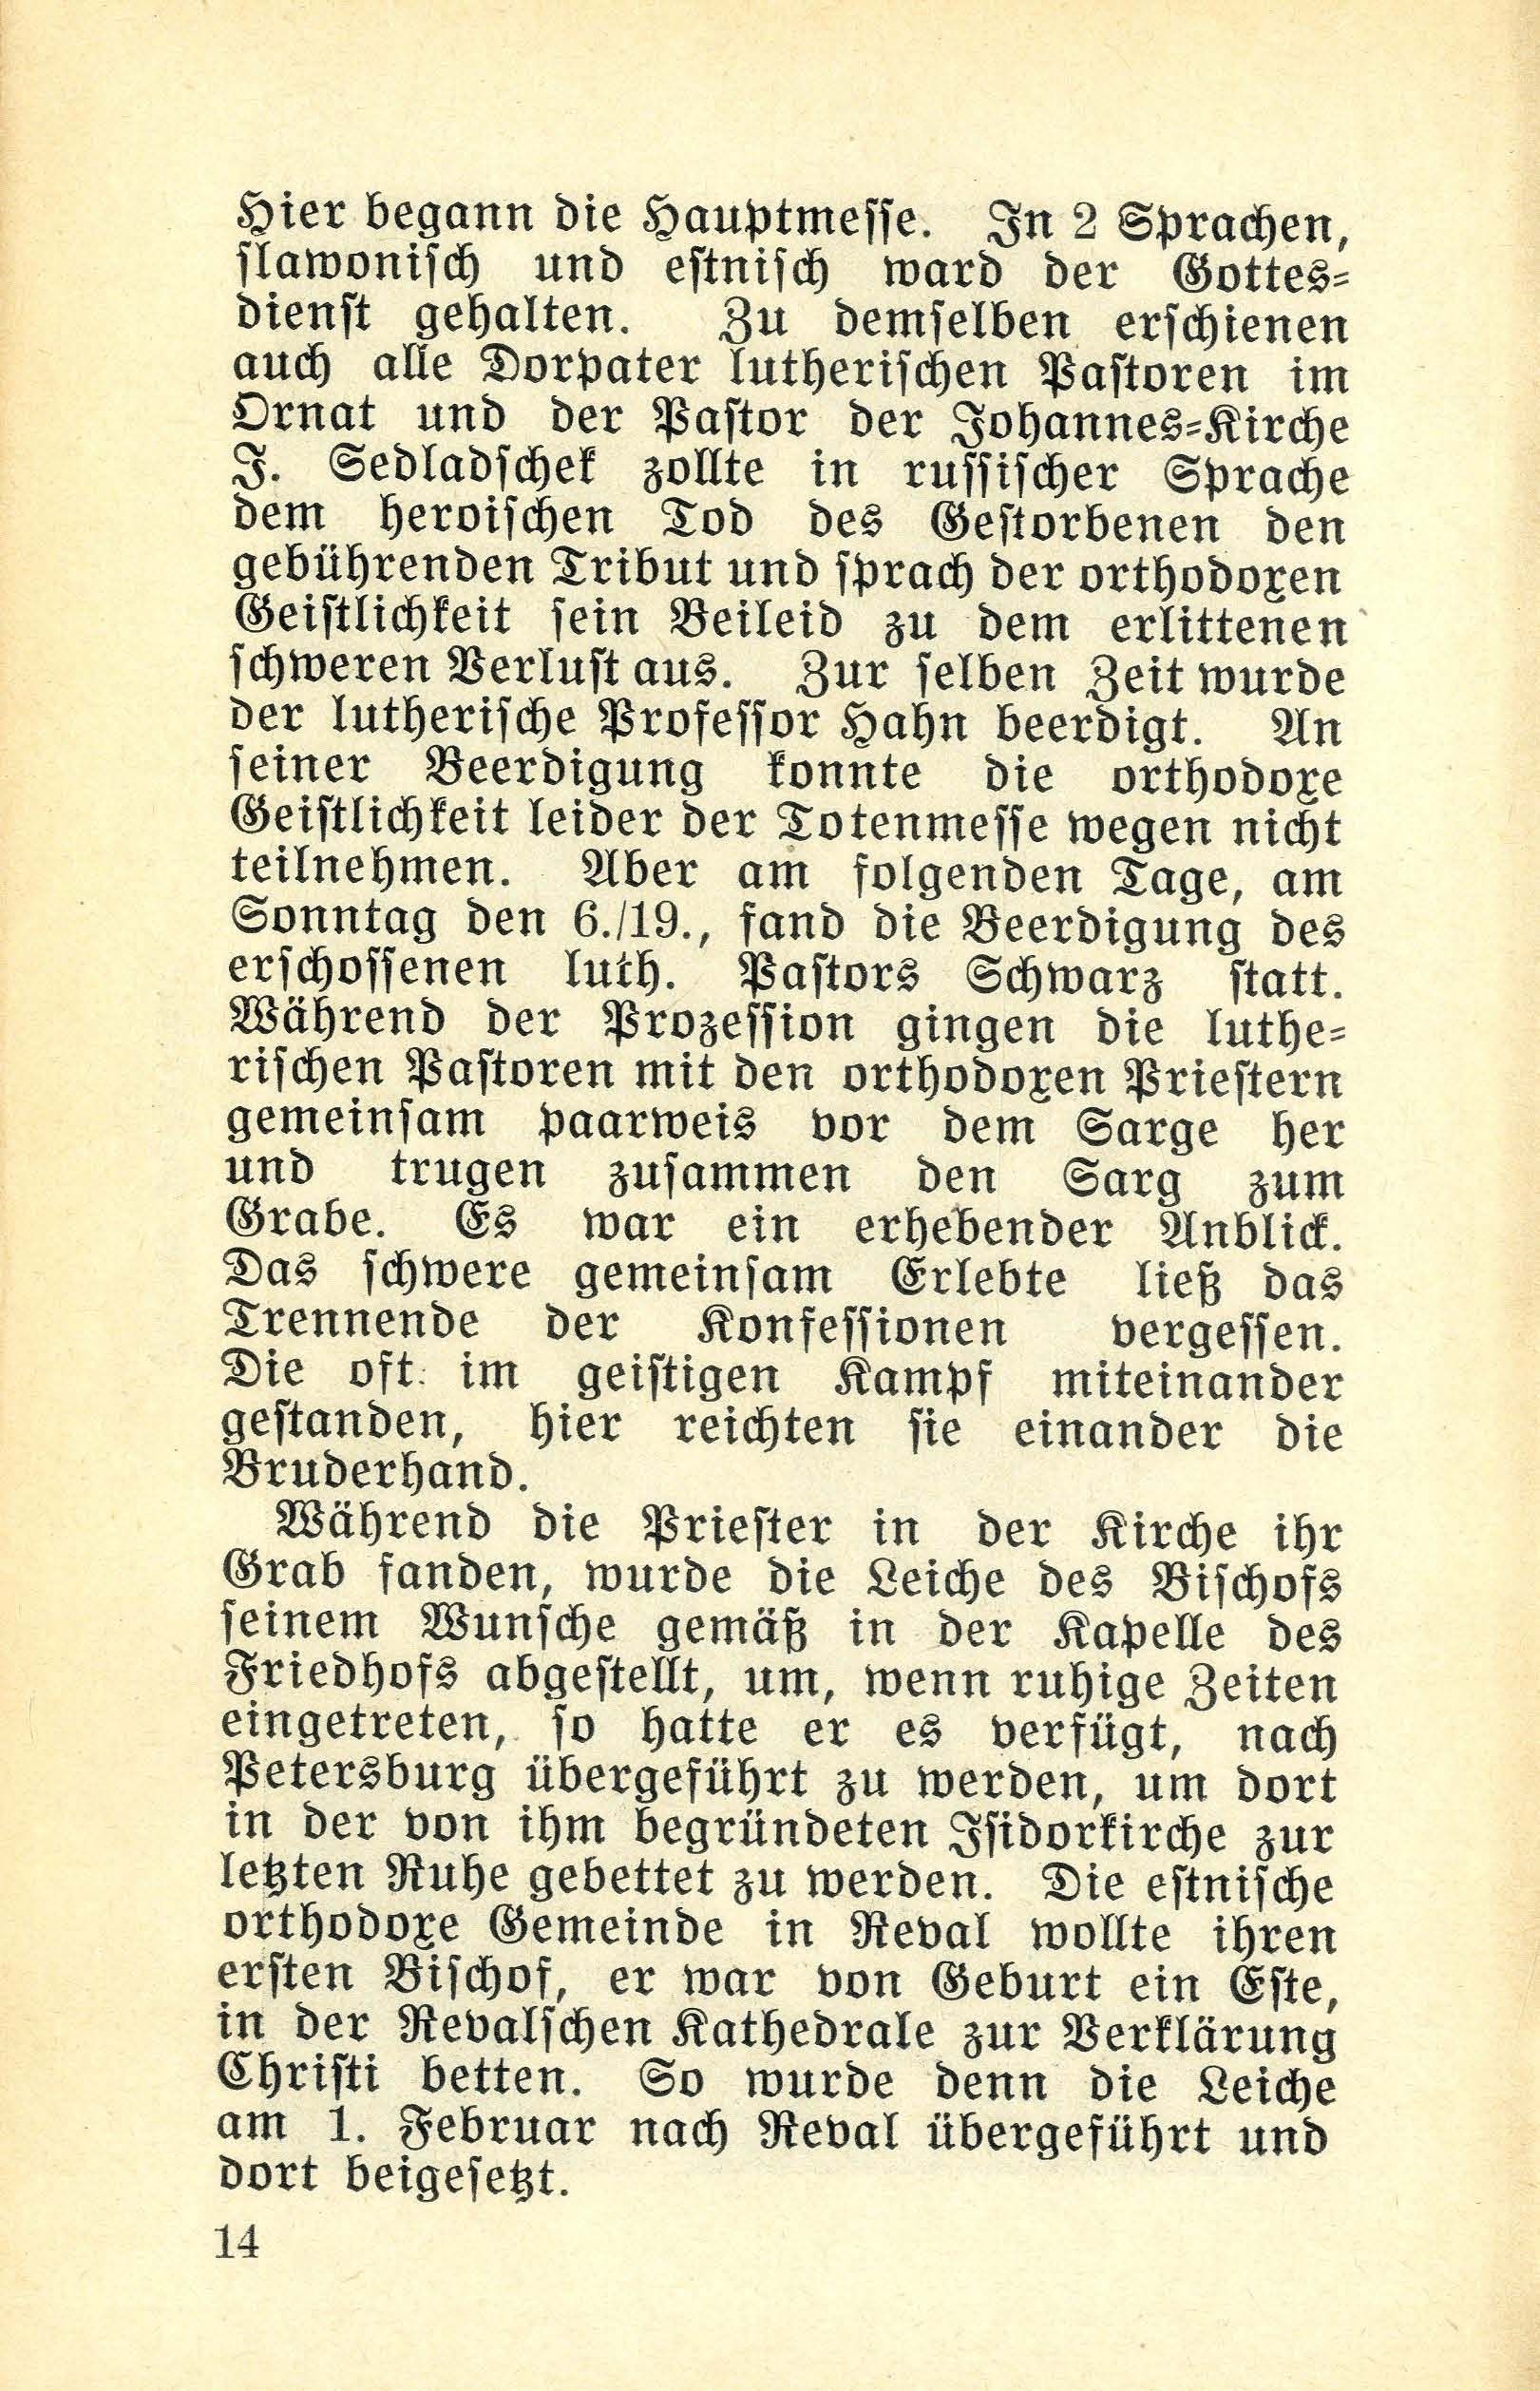 Die Dorpatschen Märtyrer der orthodoxen Kirche vom Jahre 1919 (1932) | 15. (14) Haupttext